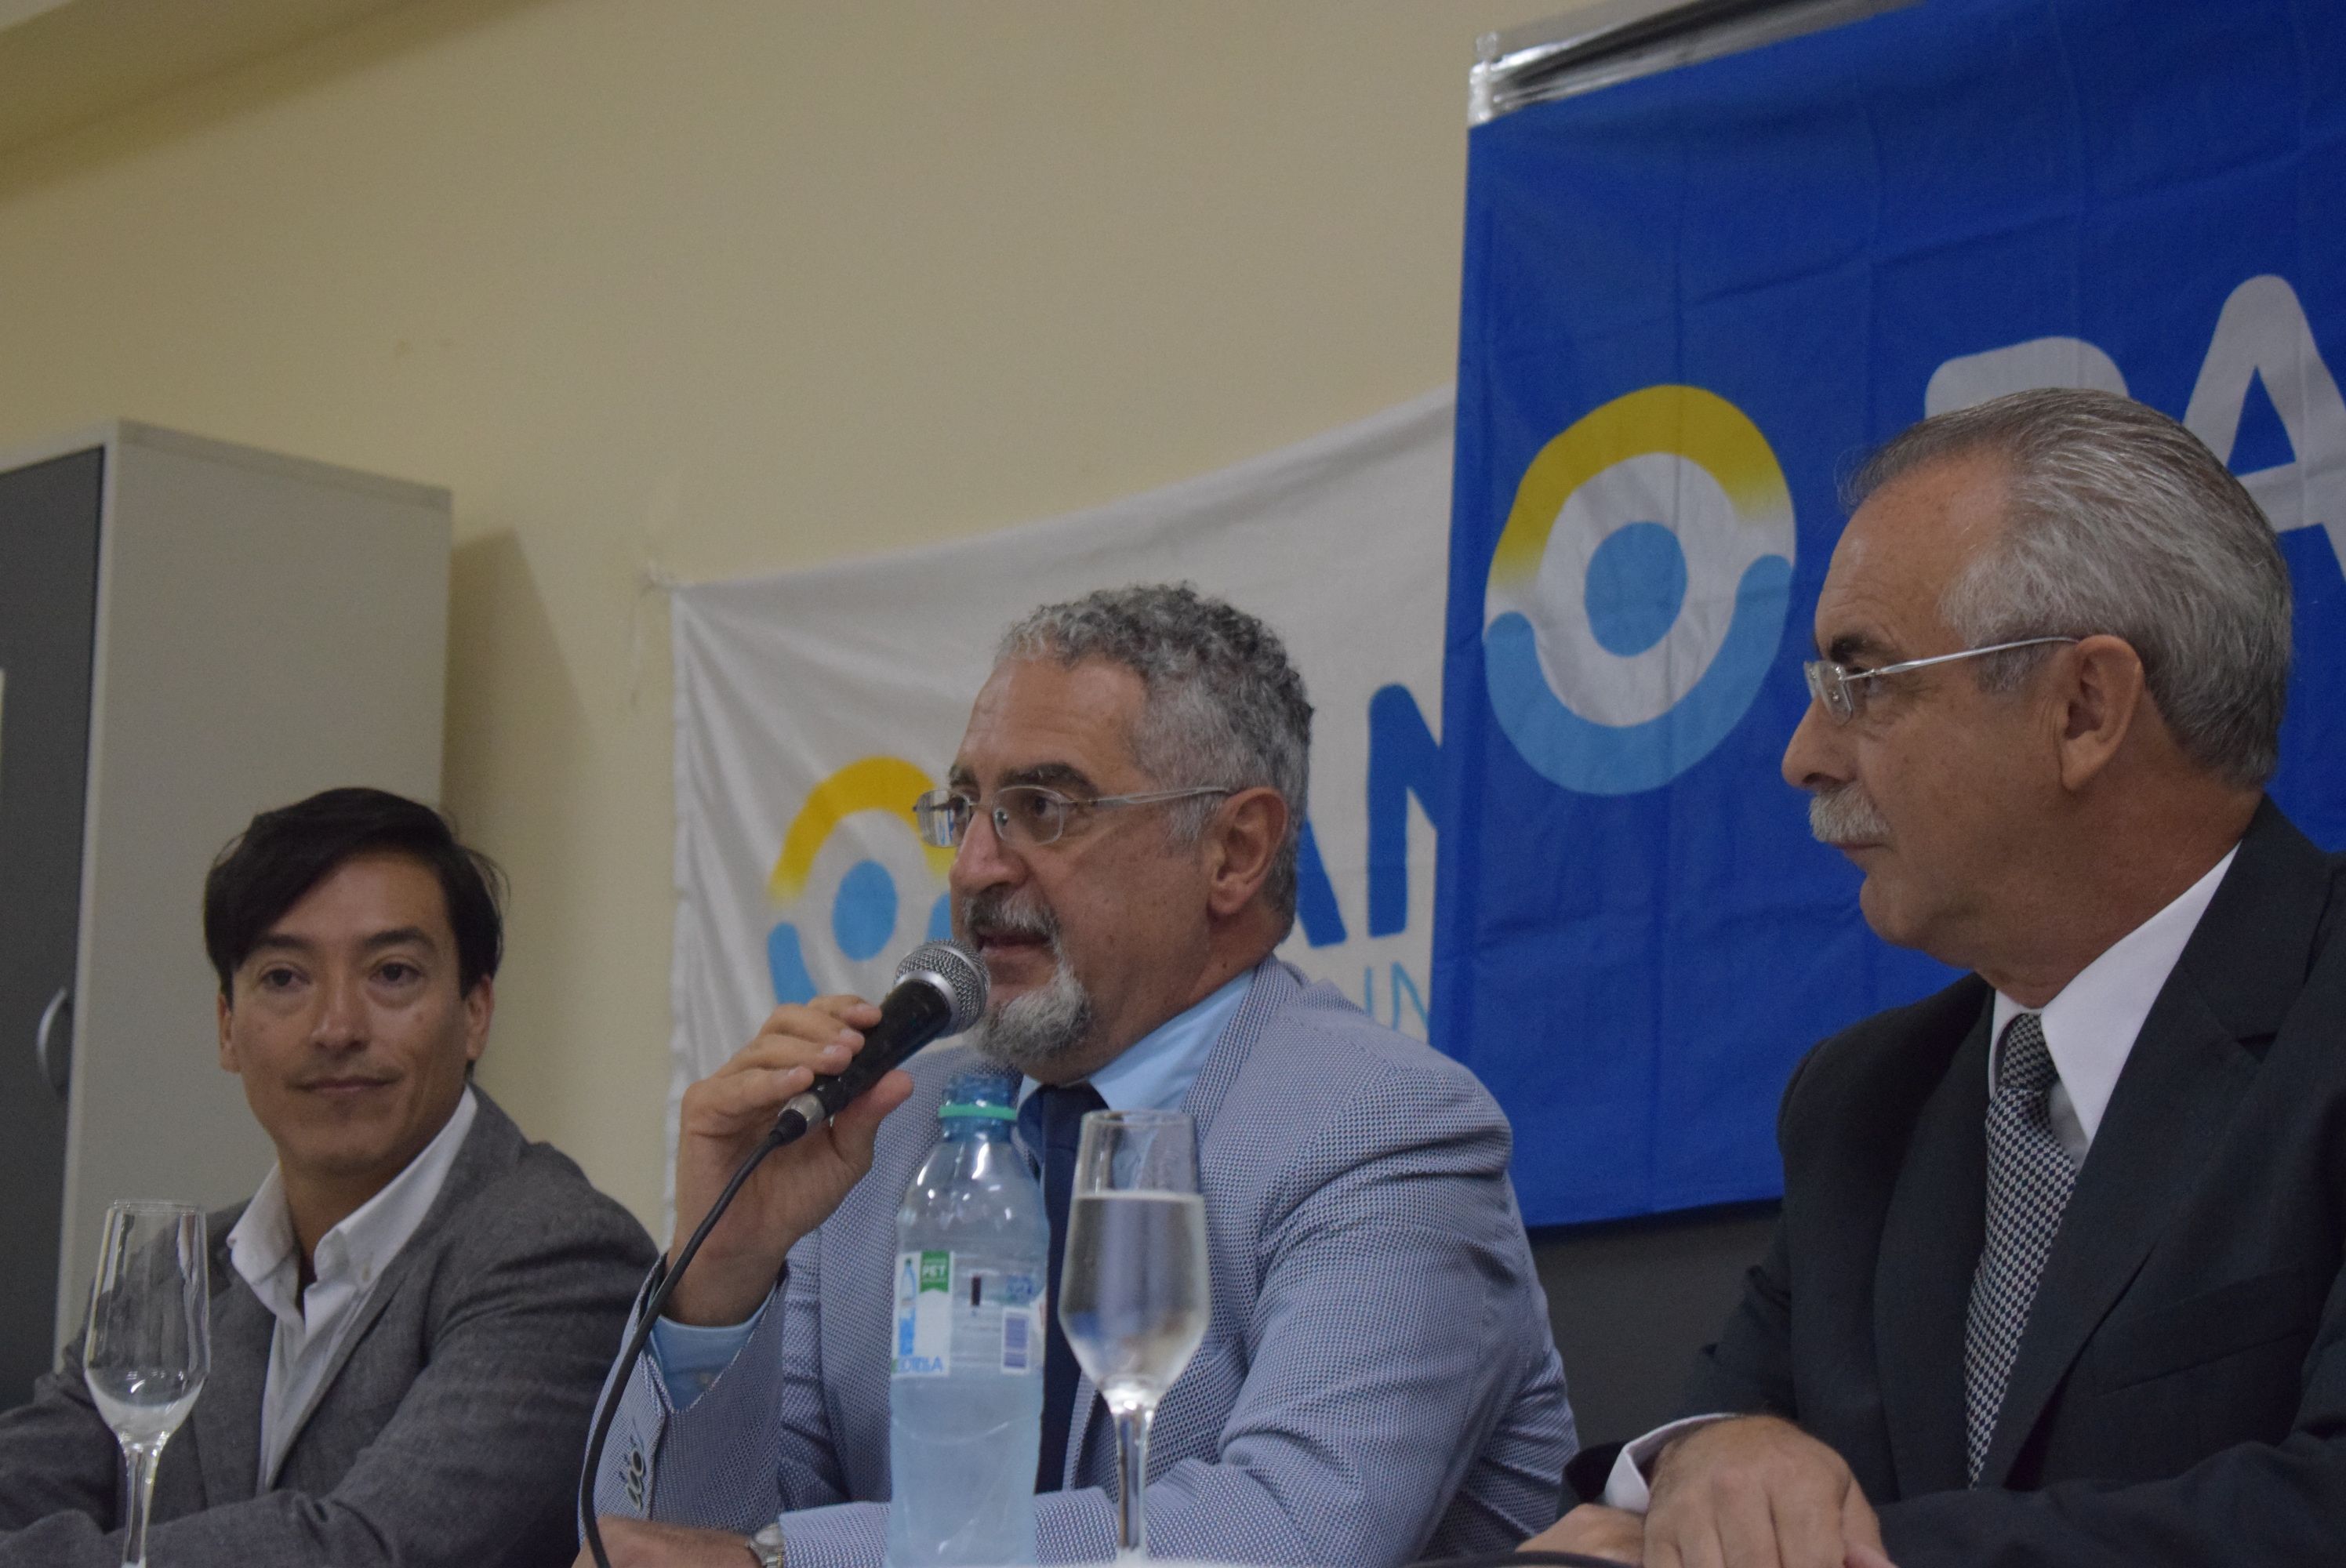 El Ministro de Salud, Gustavo Bouhid junto al flamante Director del PAMI, Álvaro Cormenzana y el Coor. Médico PAMI, Adolfo Pestoni